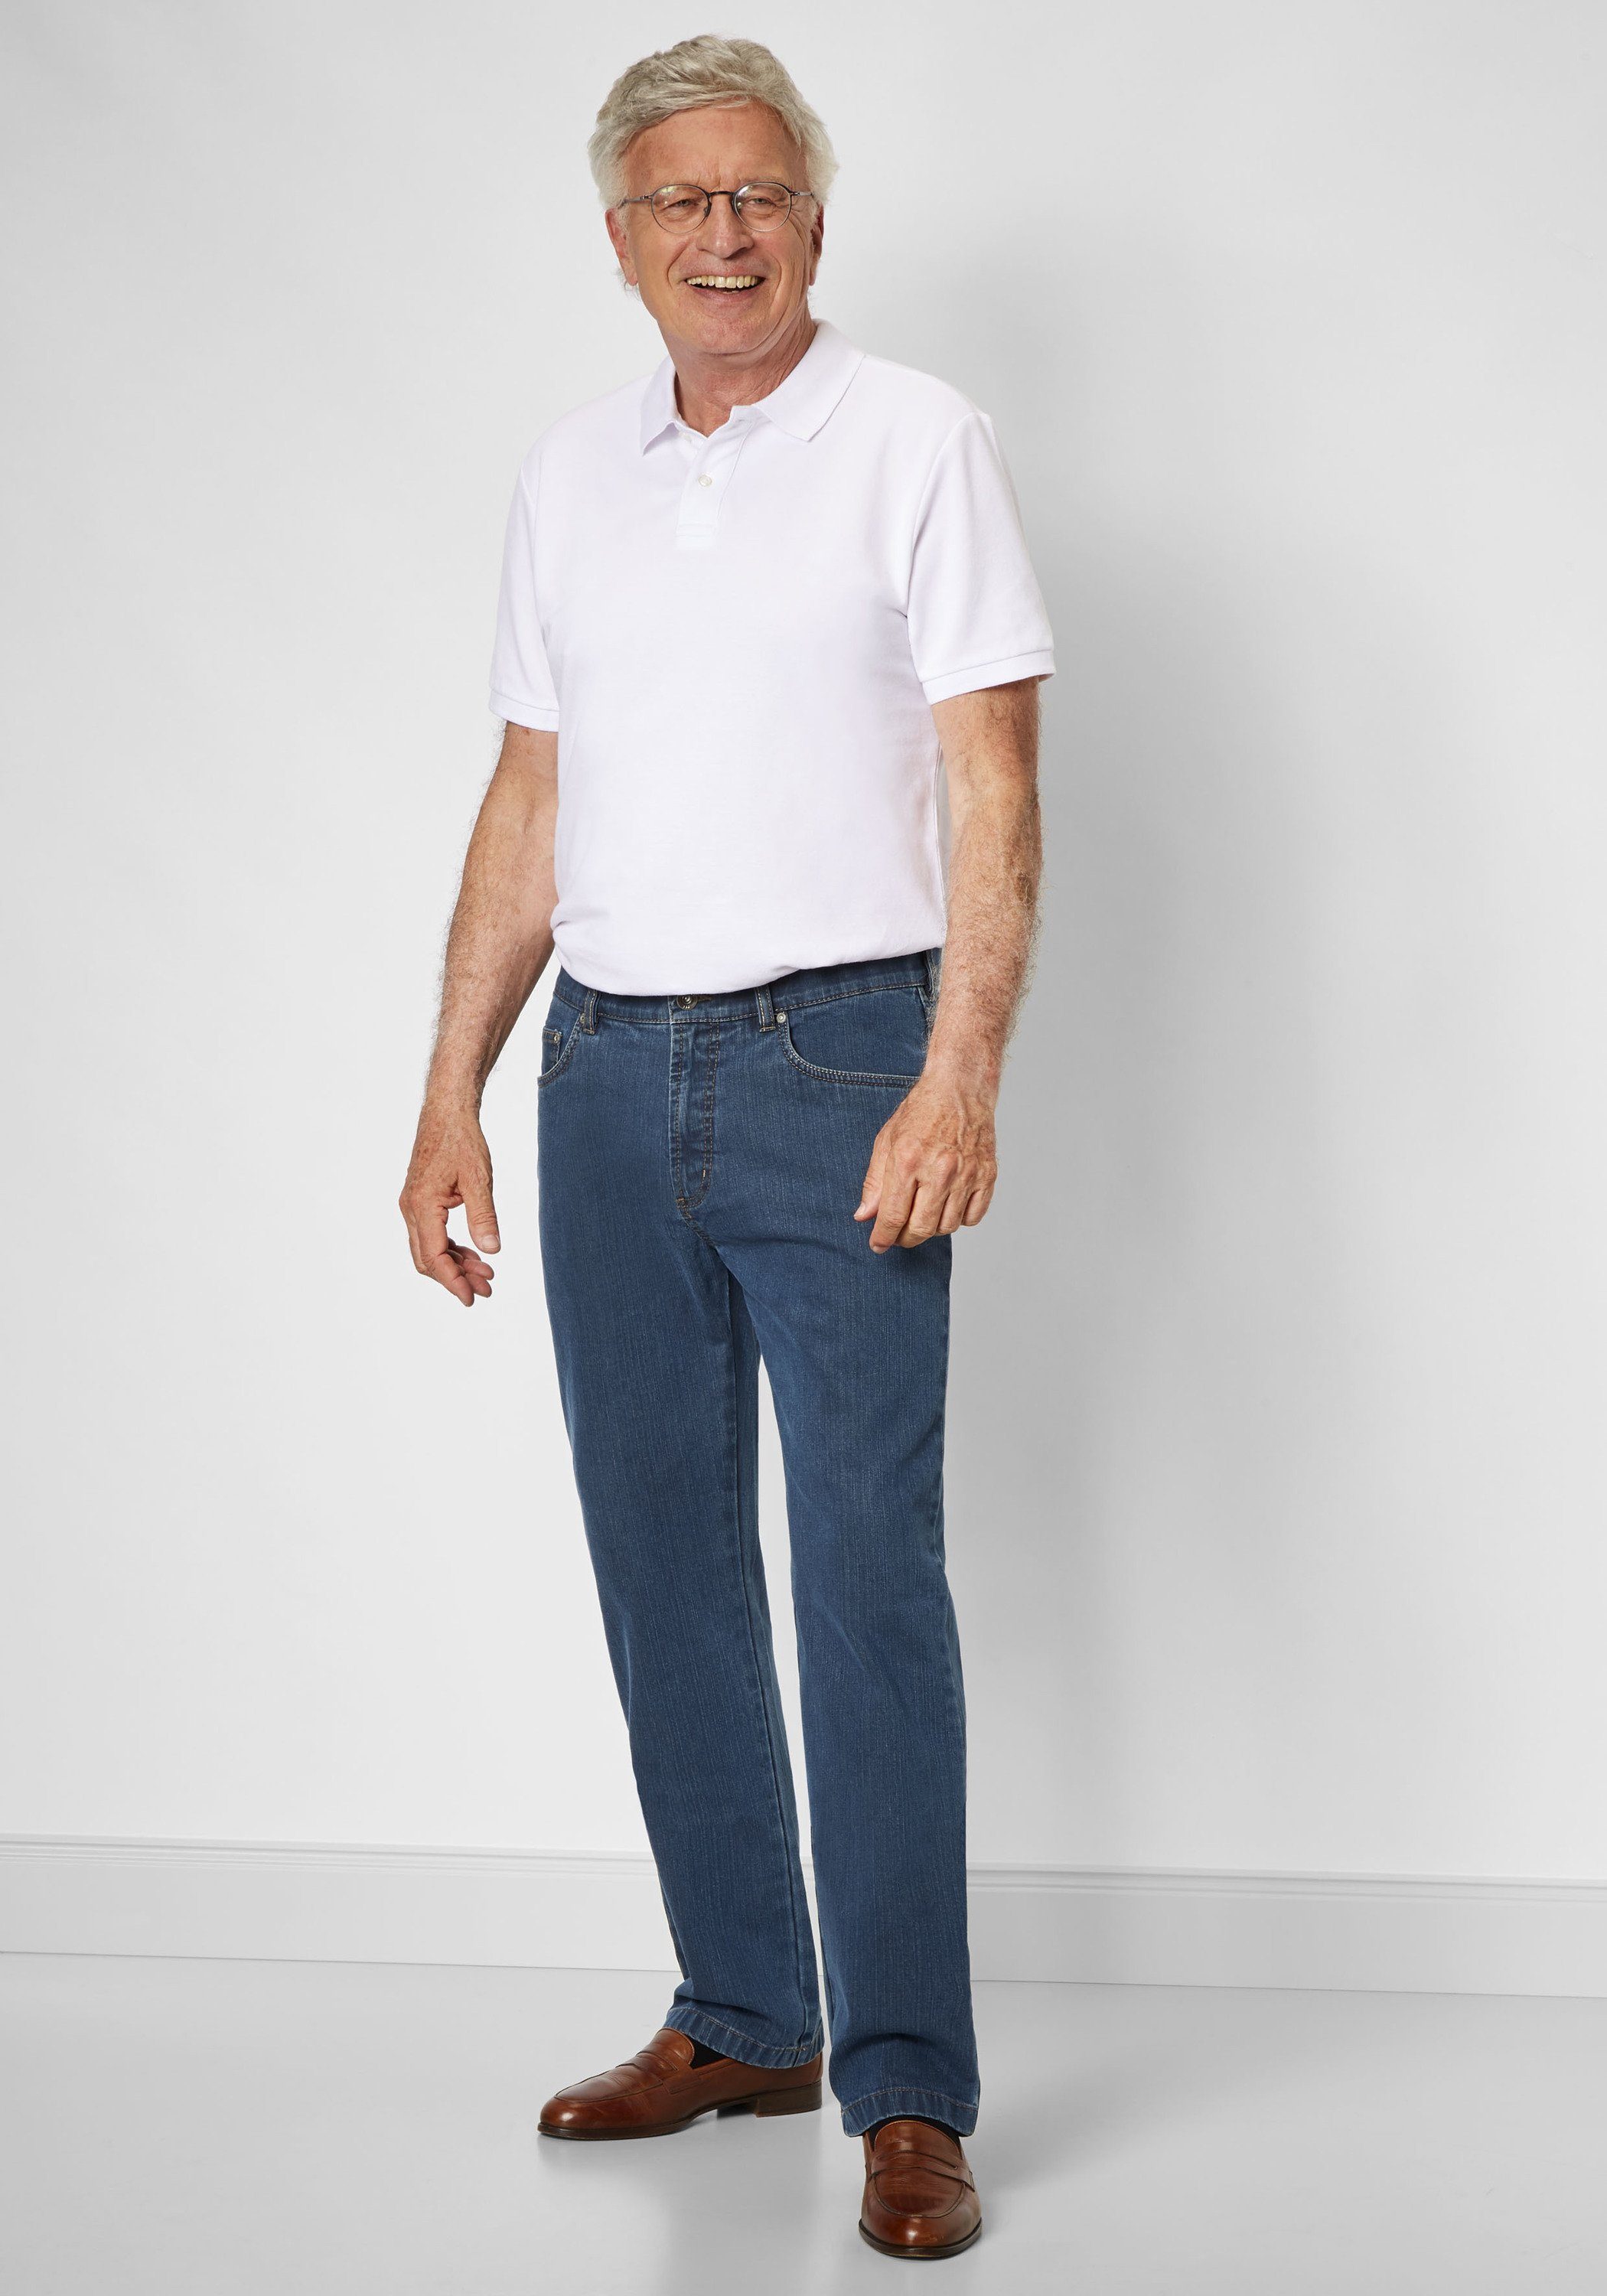 Herren Jeans Suprax 5-Pocket-Jeans 5-Pocket Hose Jeans